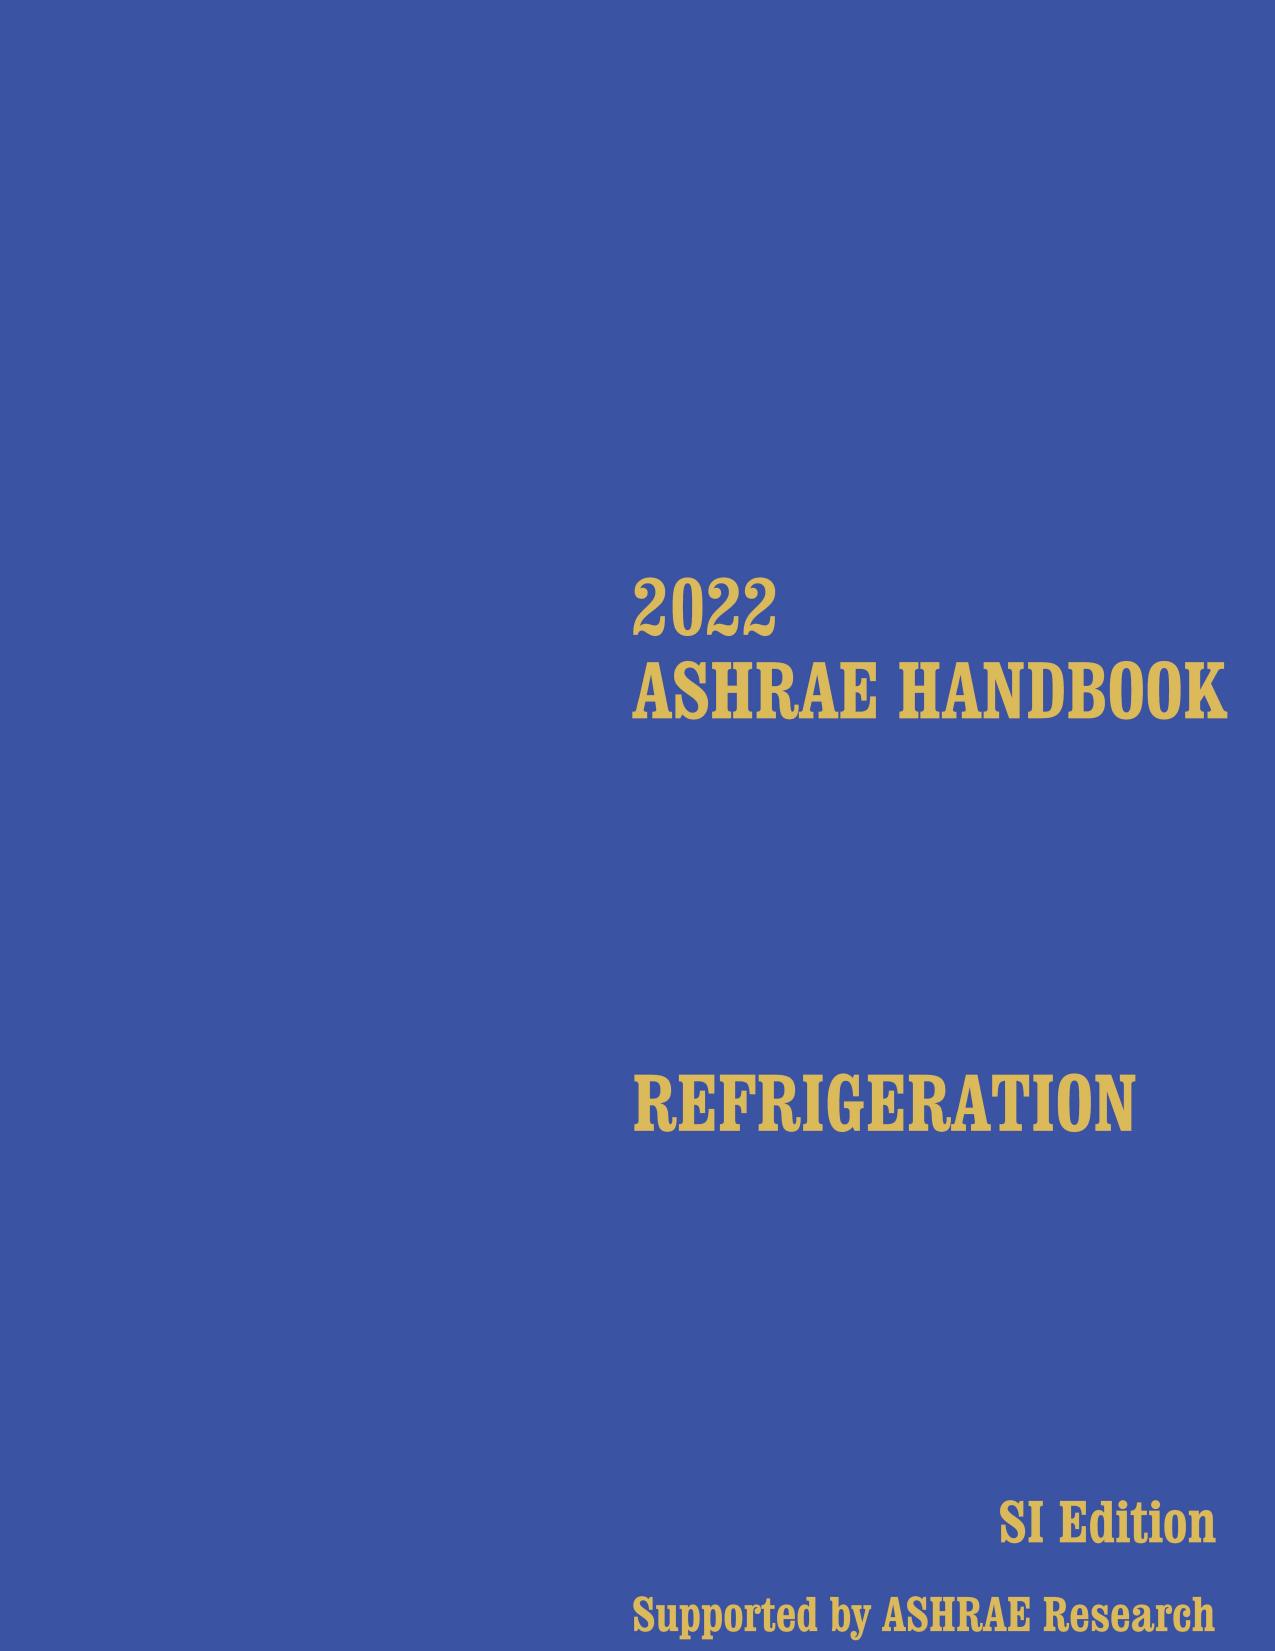 ASHRAE HANDBOOK: Refrigeration by Ashrae